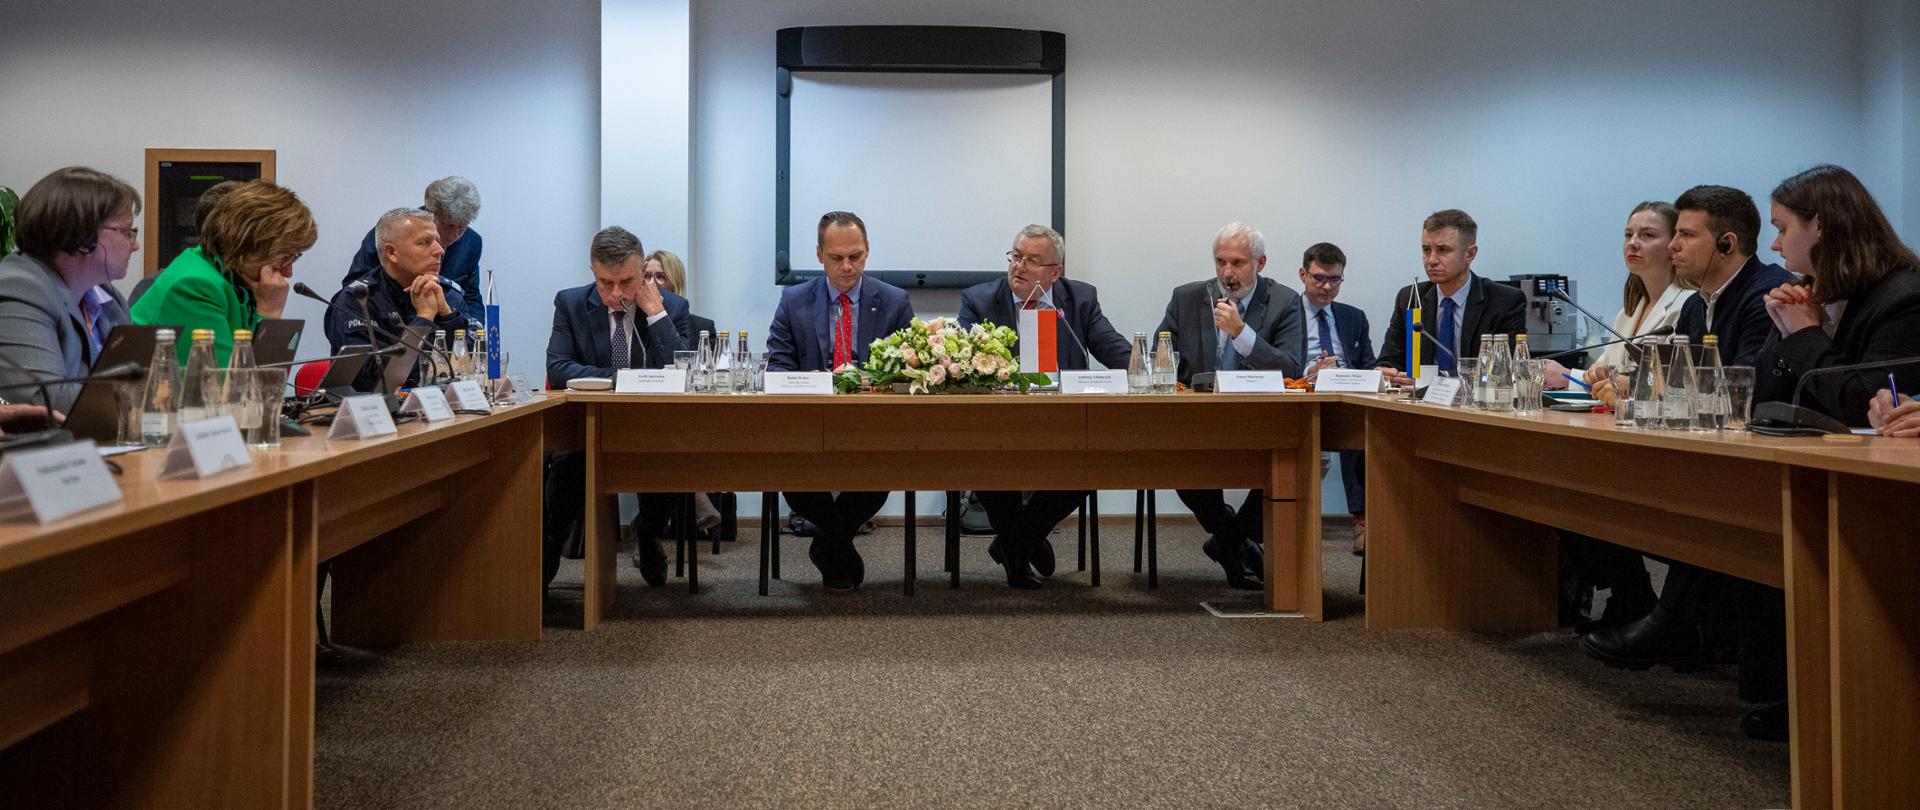 Minister infrastruktury RP Andrzej Adamczyk i wiceminister Rafał Weber odbywają serię spotkań międzynarodowych, których tematem jest akcja protestacyjna przedstawicieli branży transportu drogowego.